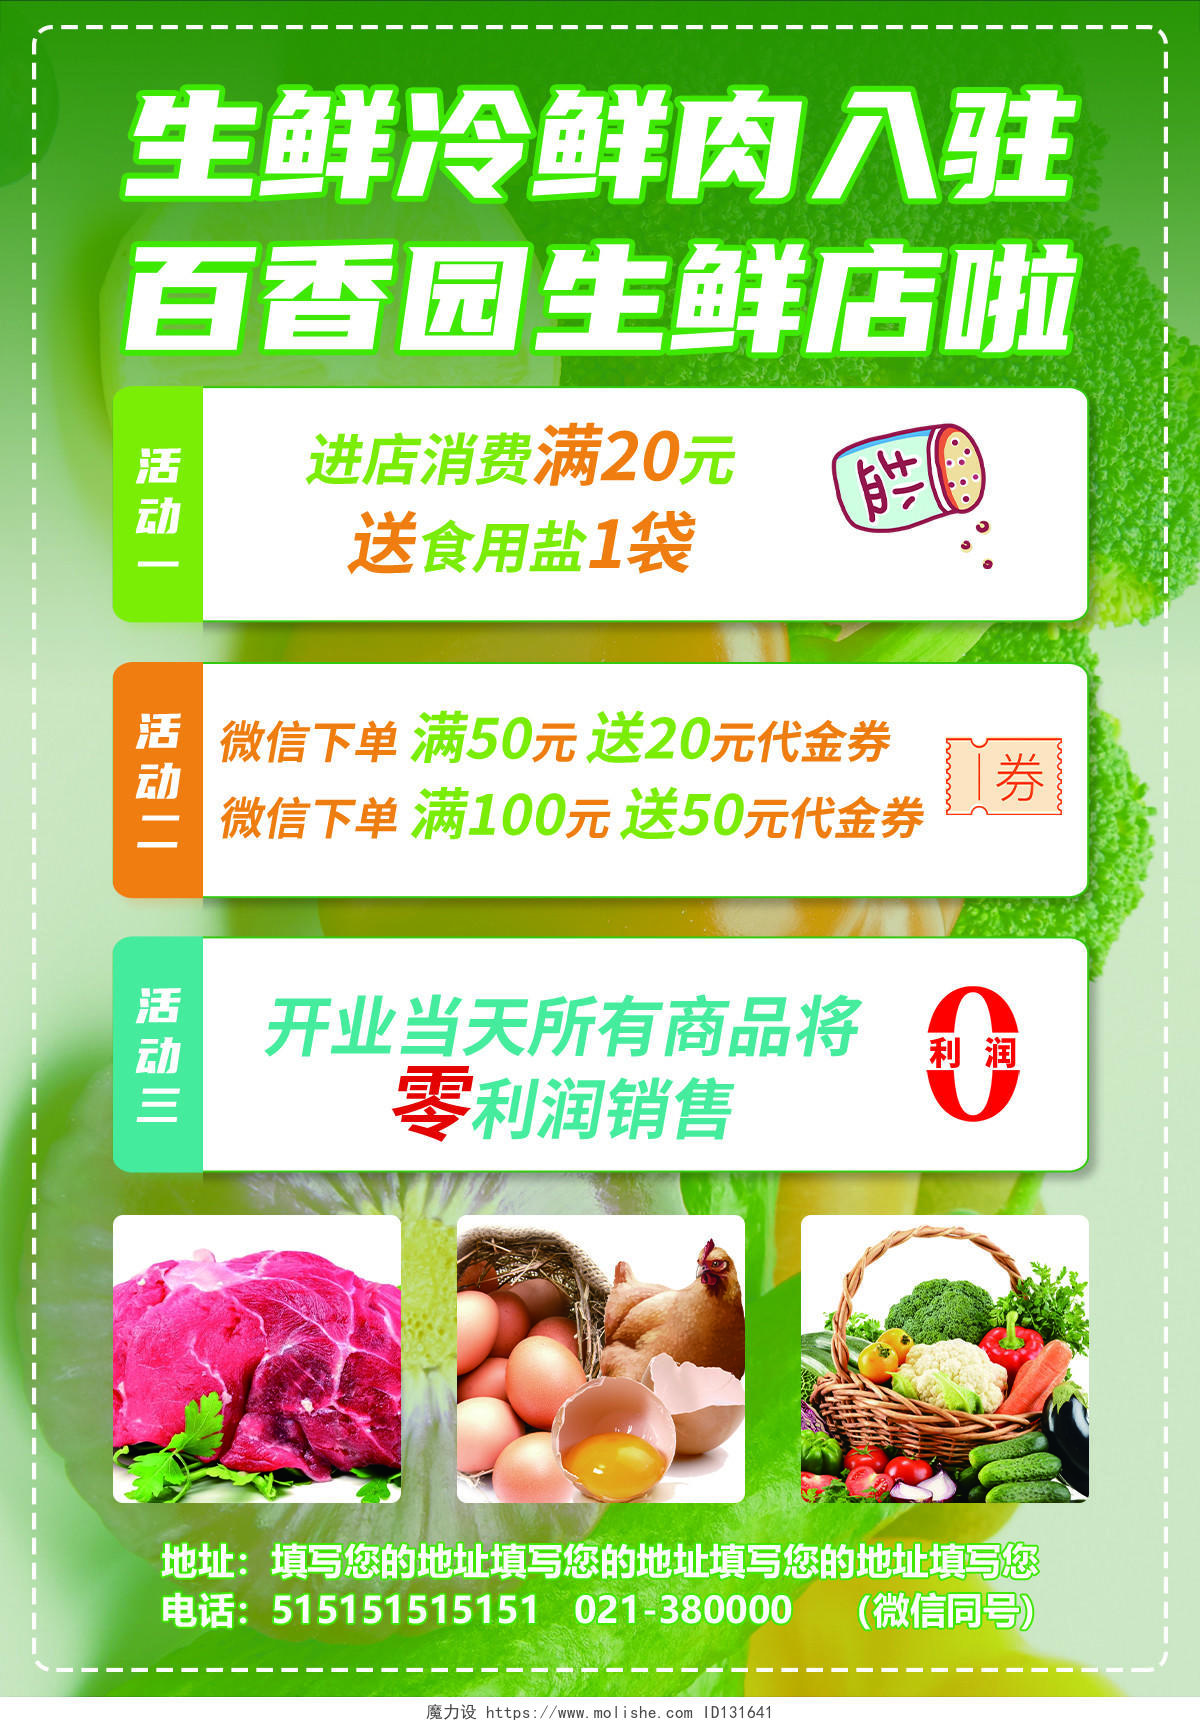 绿色生鲜蔬果生鲜店开业啦宣传单页水果开业宣传单